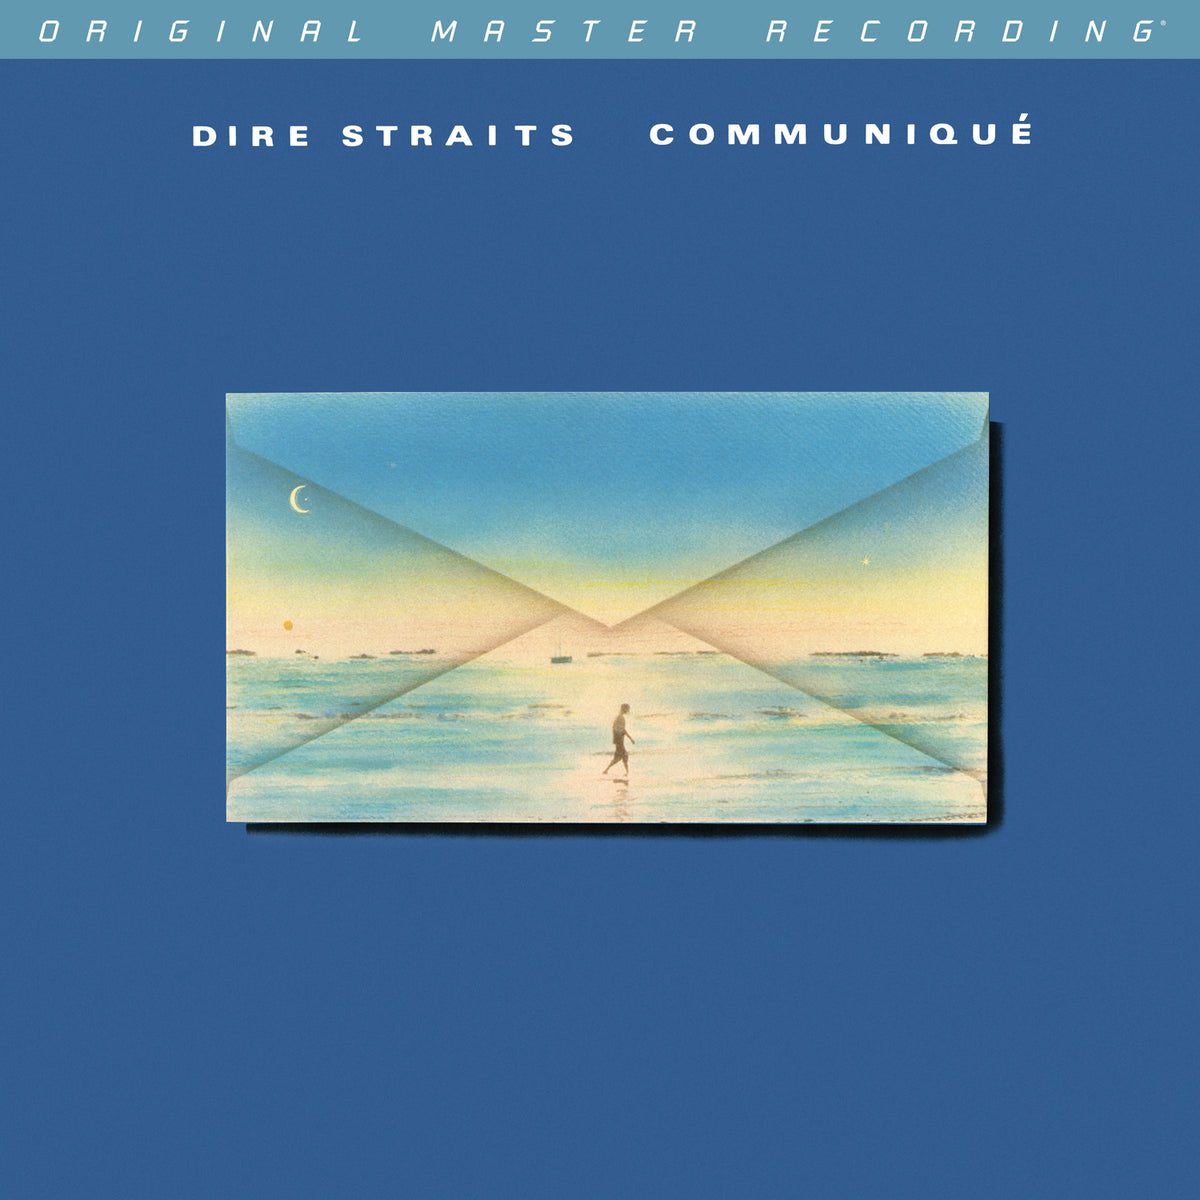 Dire Straits - Communique [2LP] (180 Gram 45RPM Audiophile Vinyl, Mobile Fidelity Sound Lab)